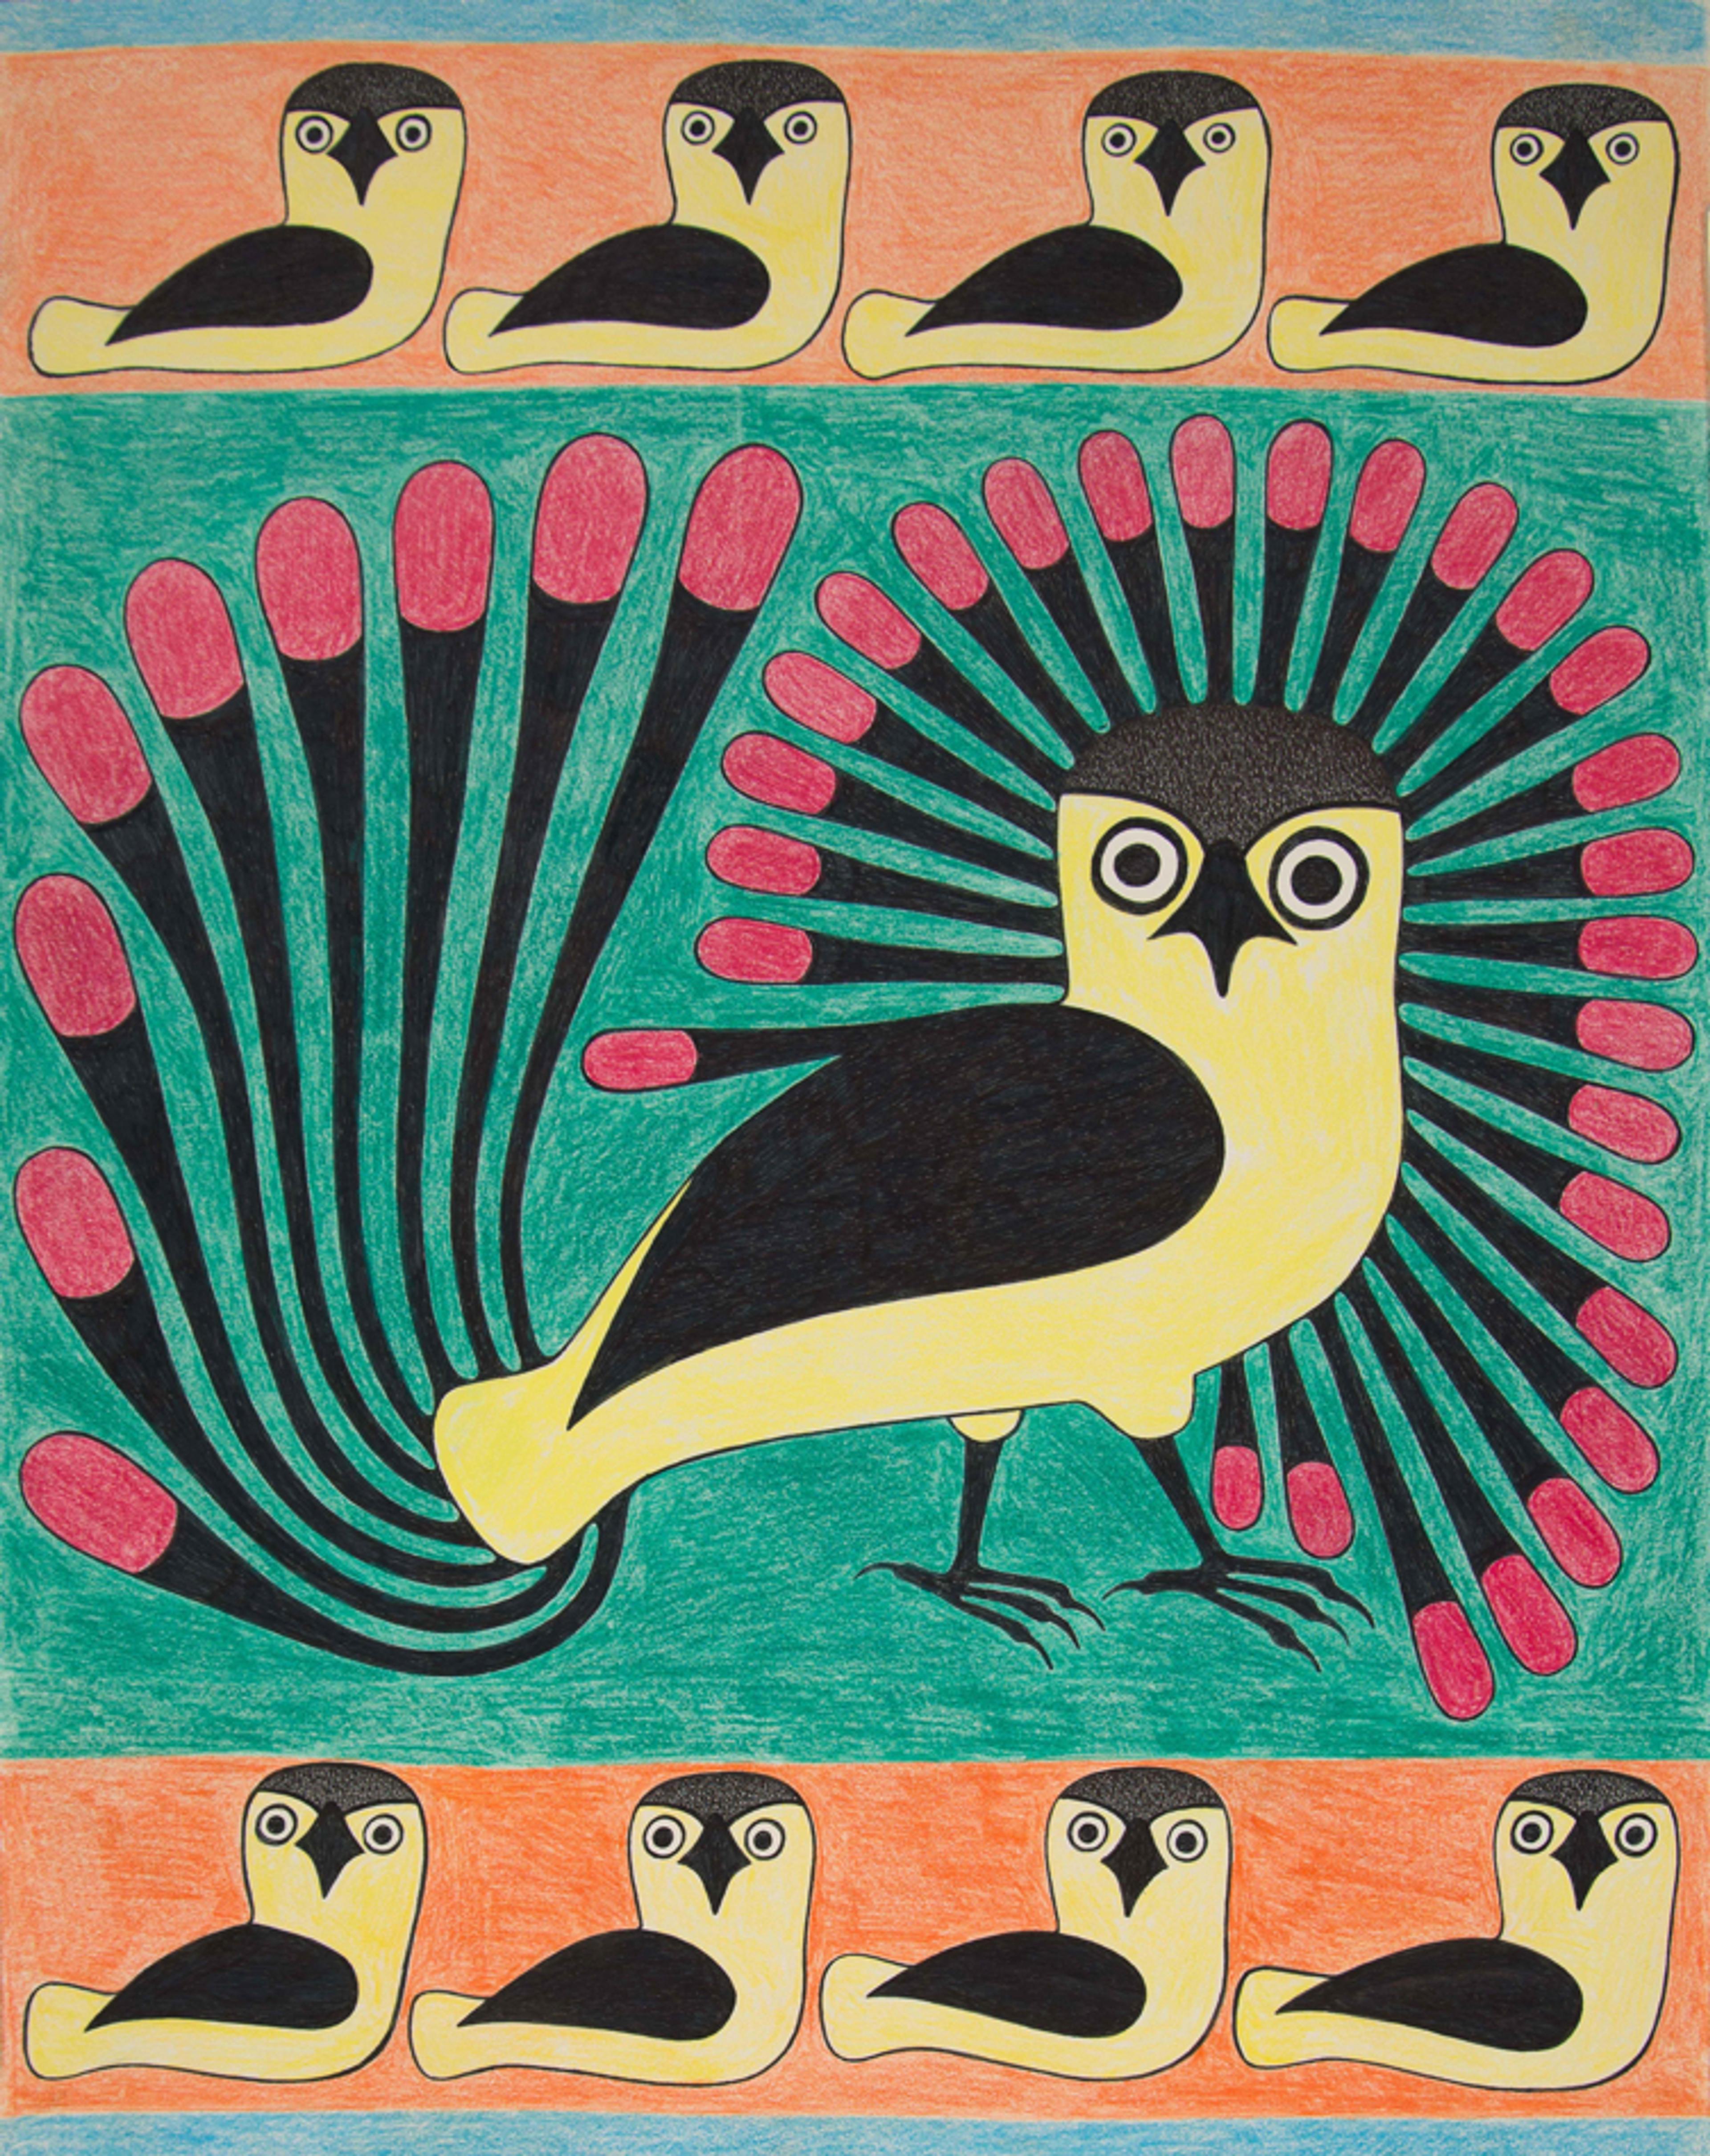 Tapestry of Owls, Kenojuak Ashevak, 1999-2002, ballpoint pen, felt tip pen, coloured pencil.